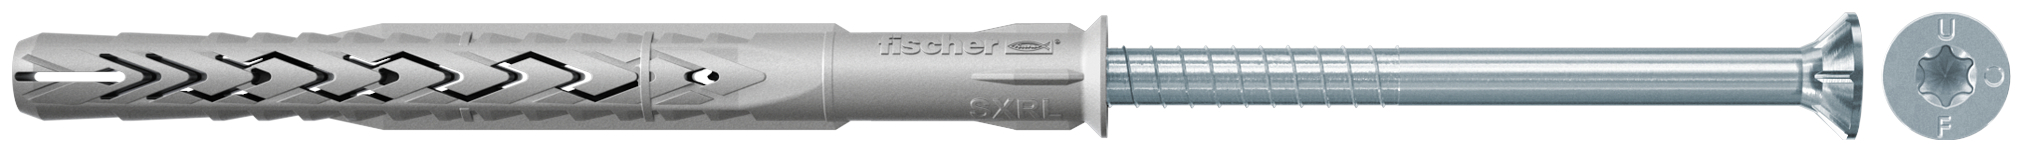 fischer Tasselli prolungati SXRL 10X200 T (1 Pz.) Tassello prolungato in nylon con marcatura CE con vite premontata T.S.P. impronta torx fie2371